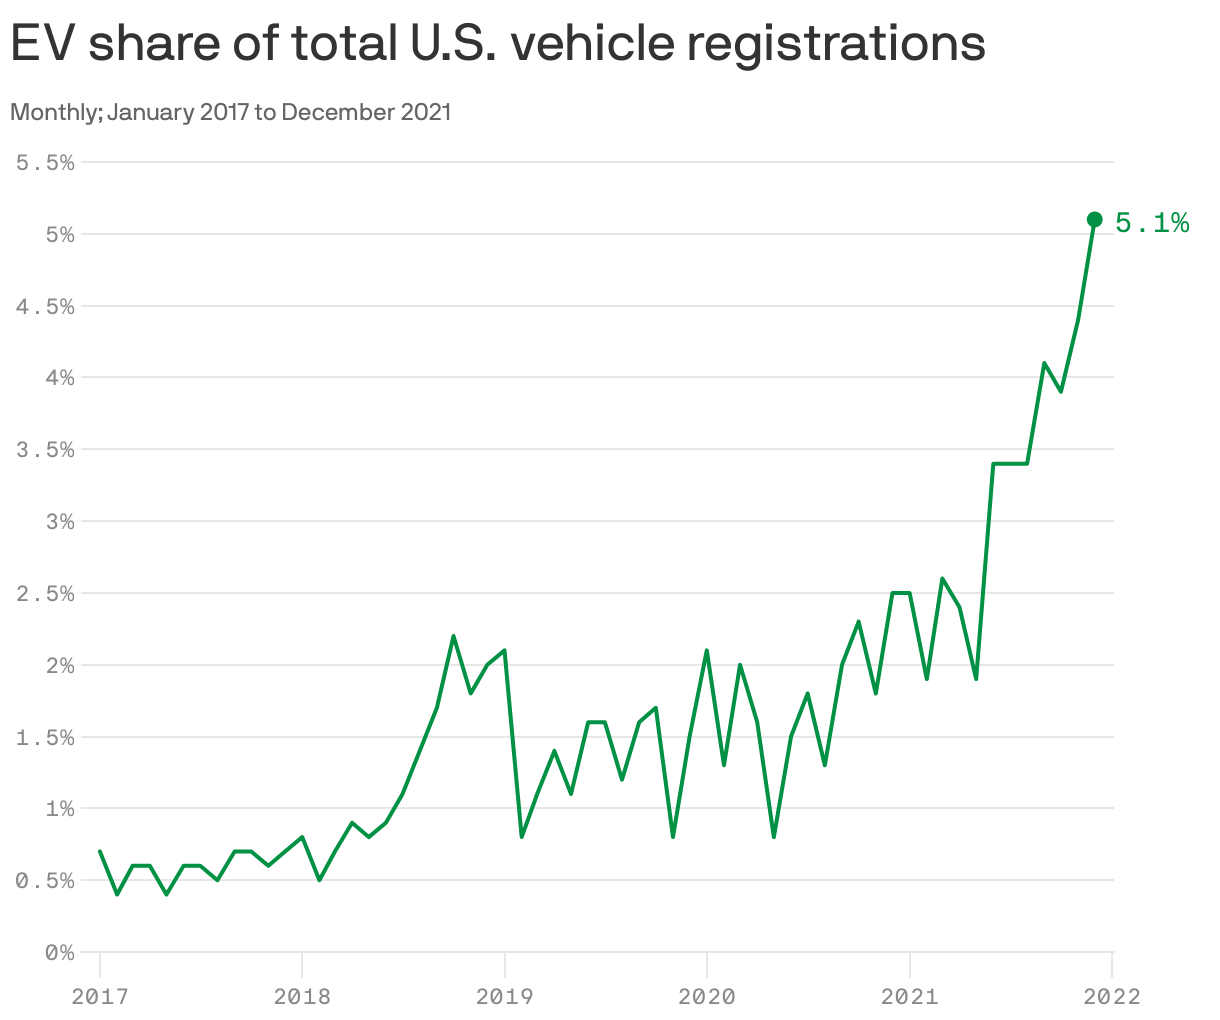 EV share of total U.S. vehicle registrations